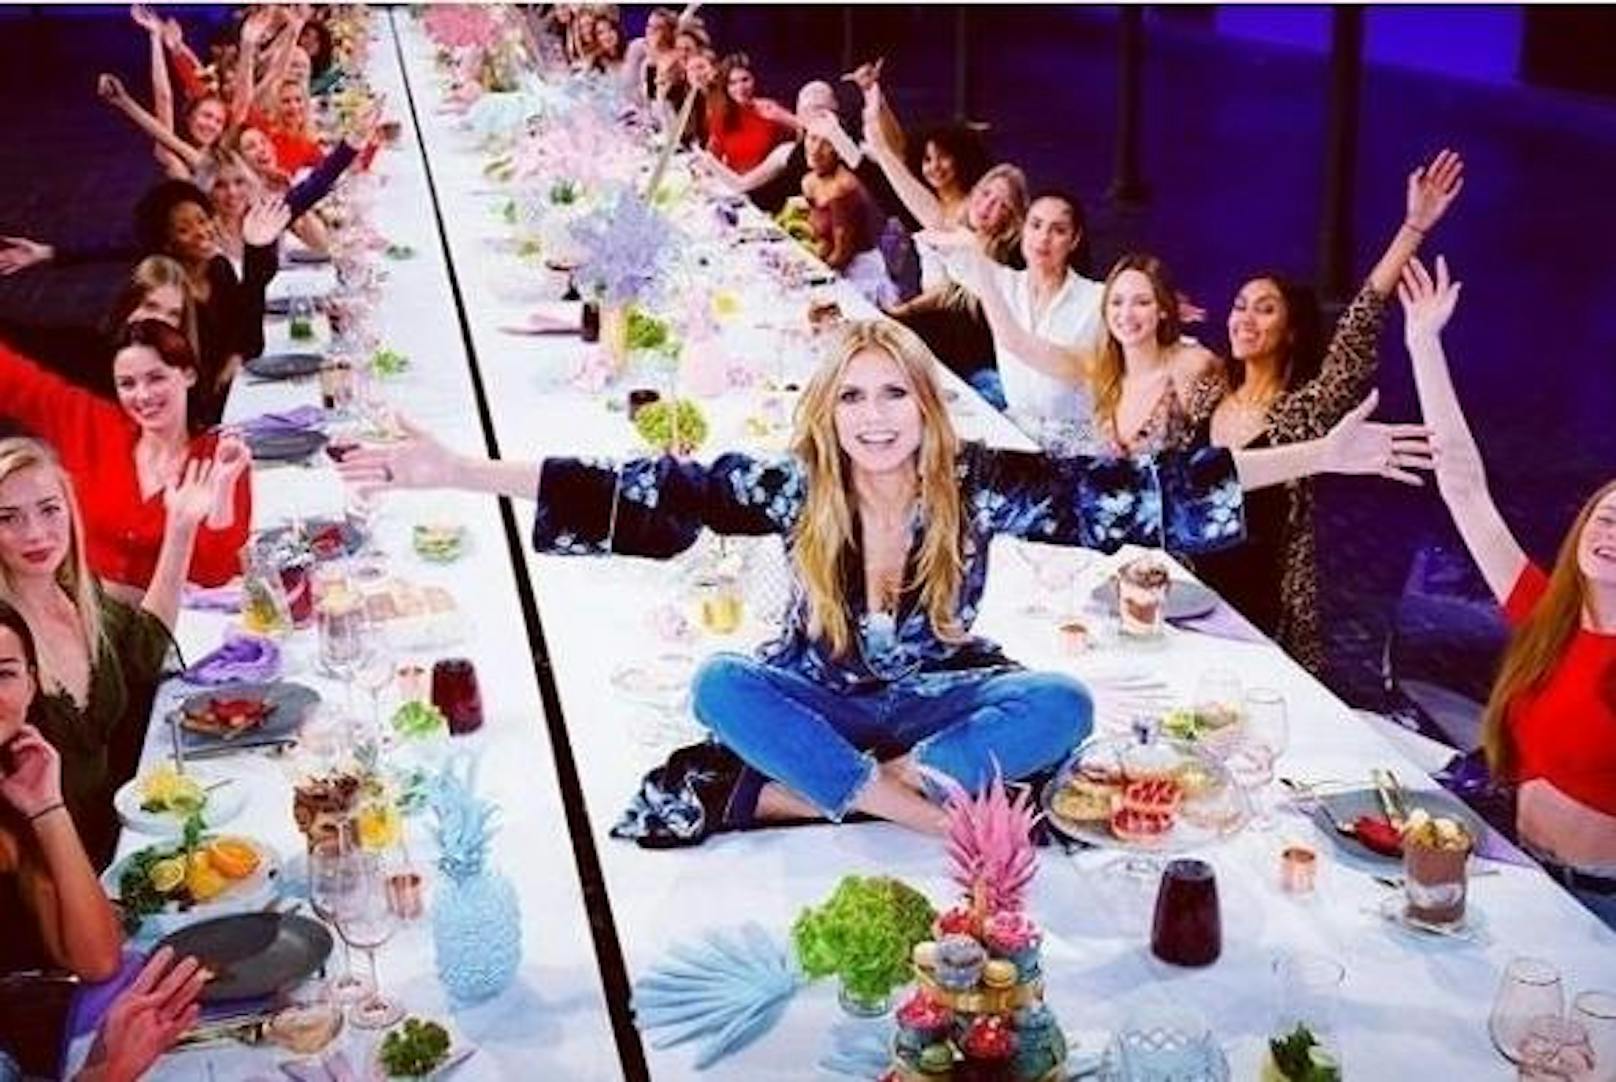 04.11.2018: Heidi Klum zeigt den ersten Blick auf die möglichen Kandidaten von "Germany's Next Topmodel" 2019. Mit den 50 Finalistinnen hat sie gemeinsam in Berlin gegessen.